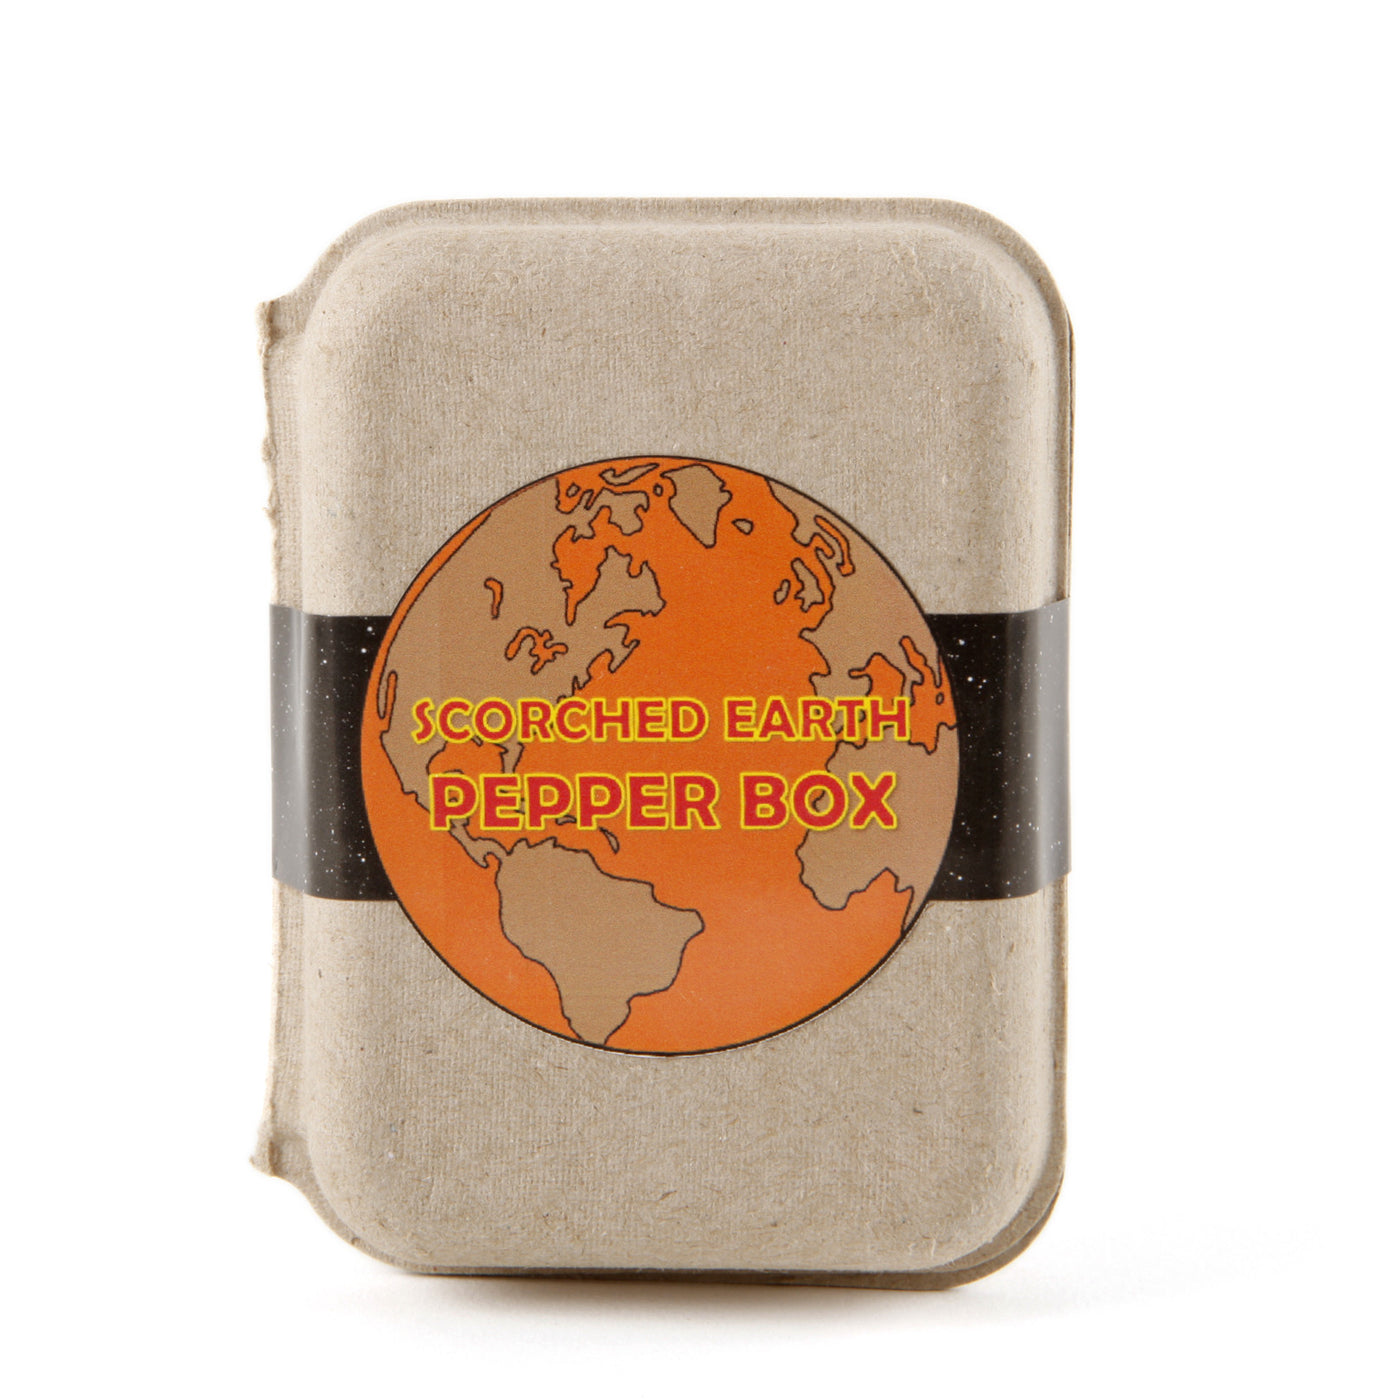 Scorched Earth Pepper Box 🔥 - Sullivan Street Tea & Spice Company